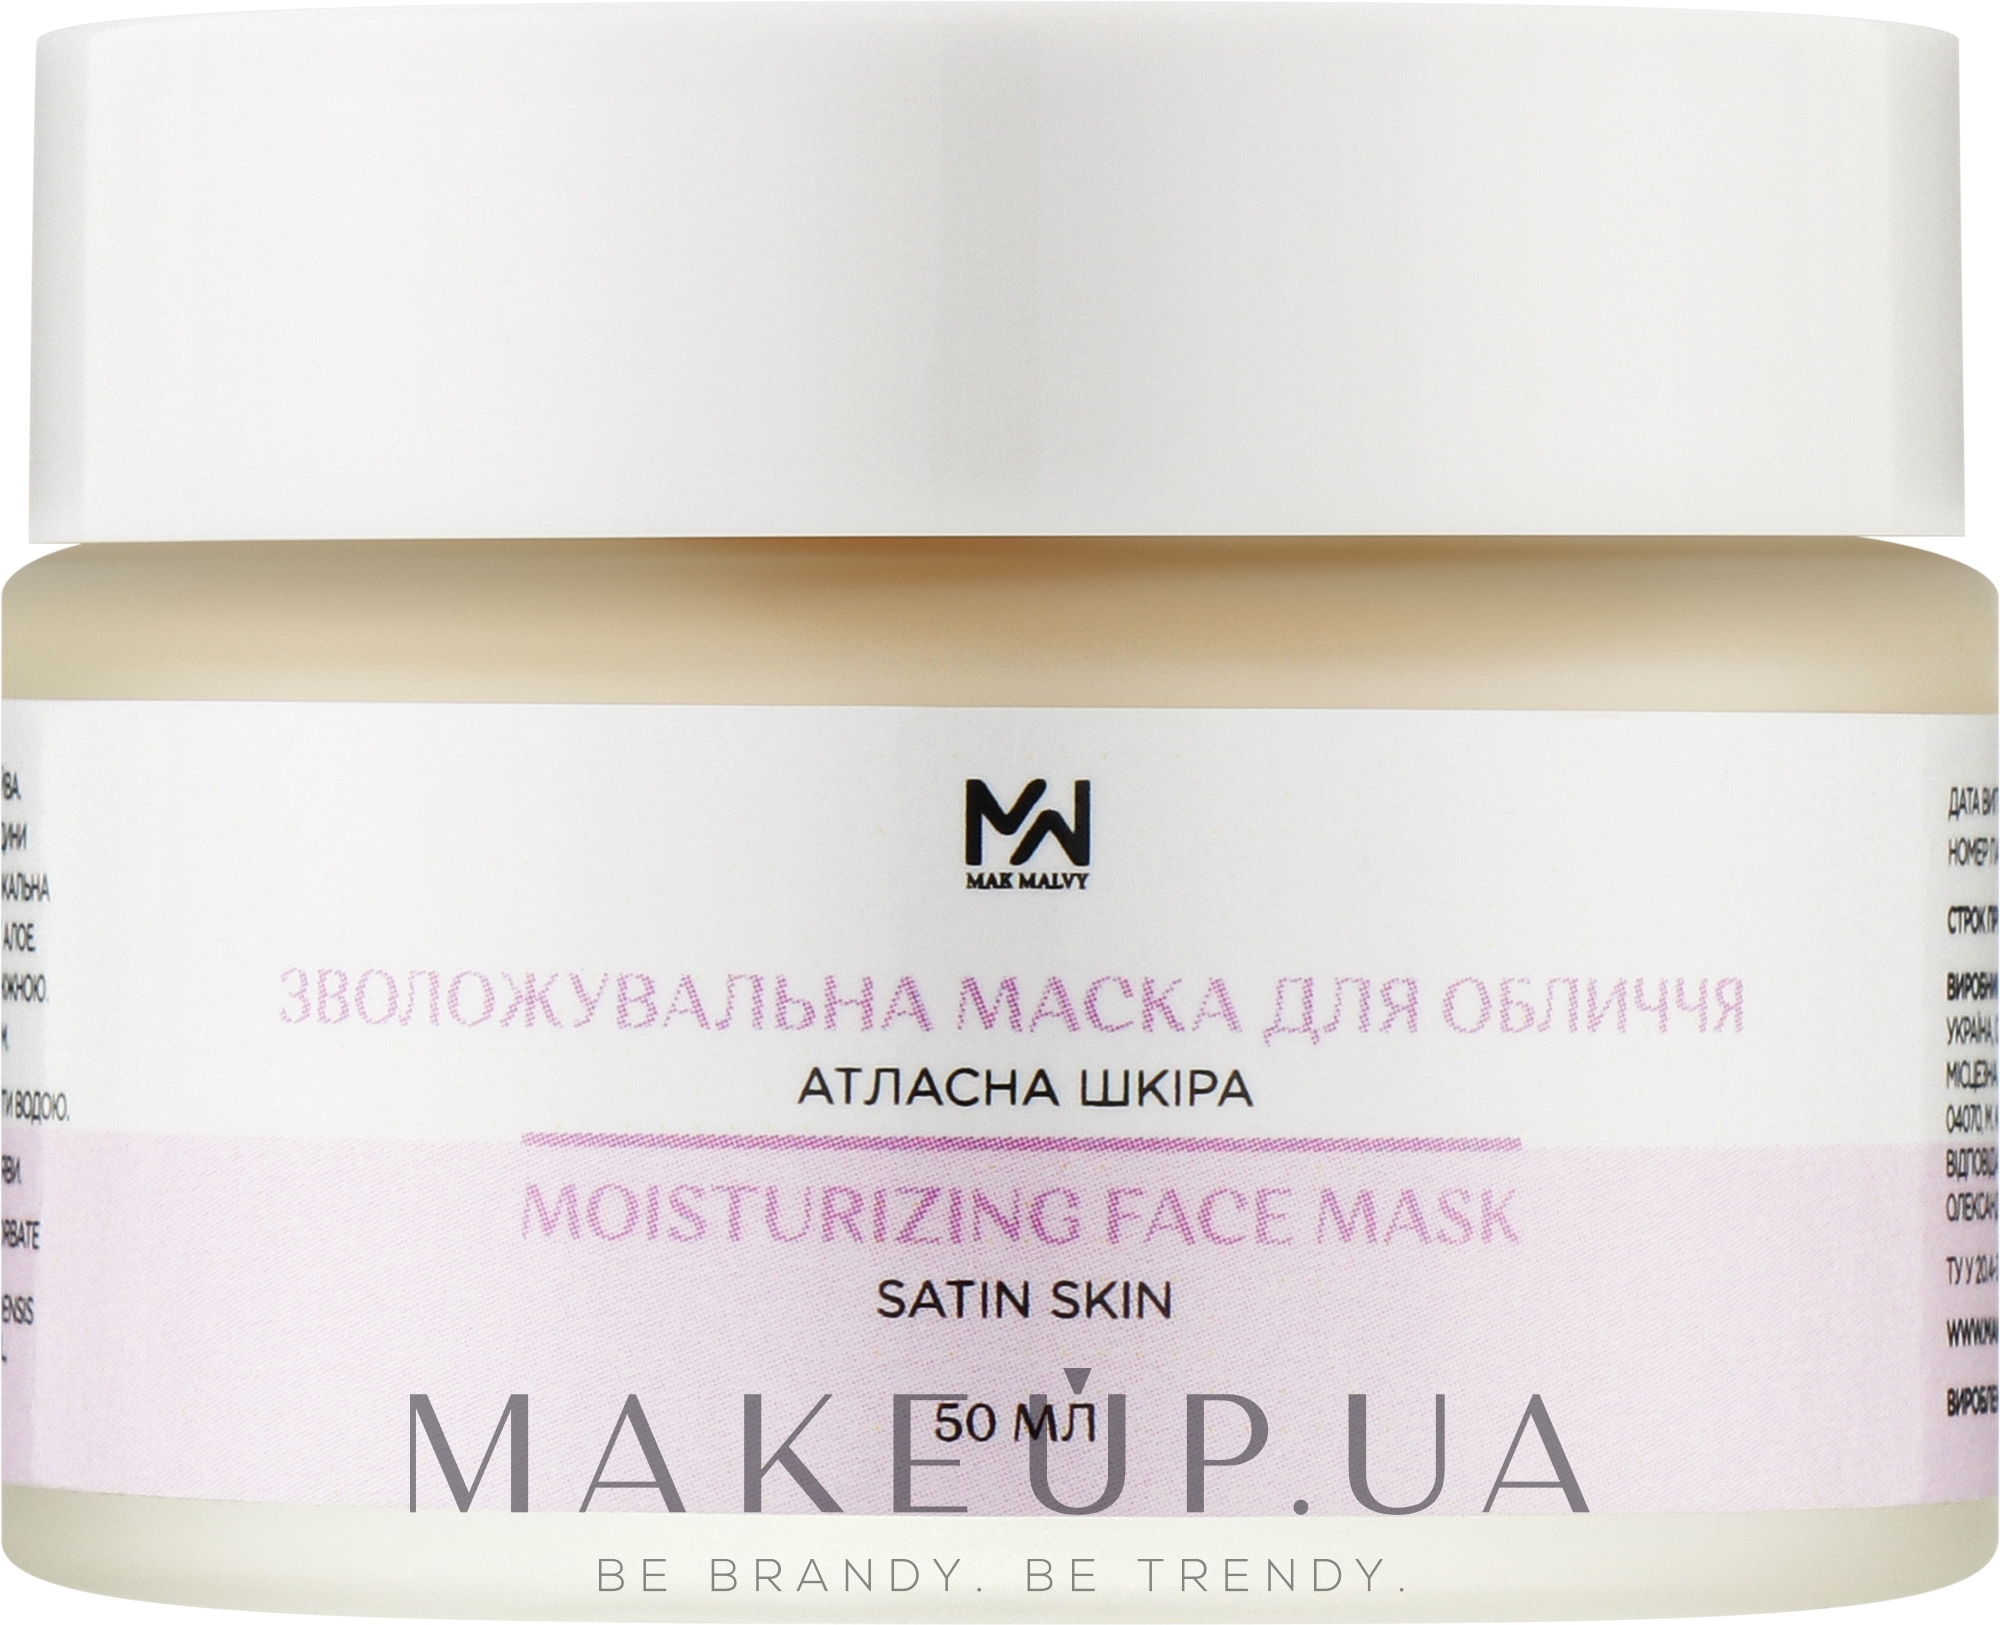 Зволожувальна маска для обличчя "Атласна шкіра" - Mak & Malvy Moisturizing Mask — фото 50ml